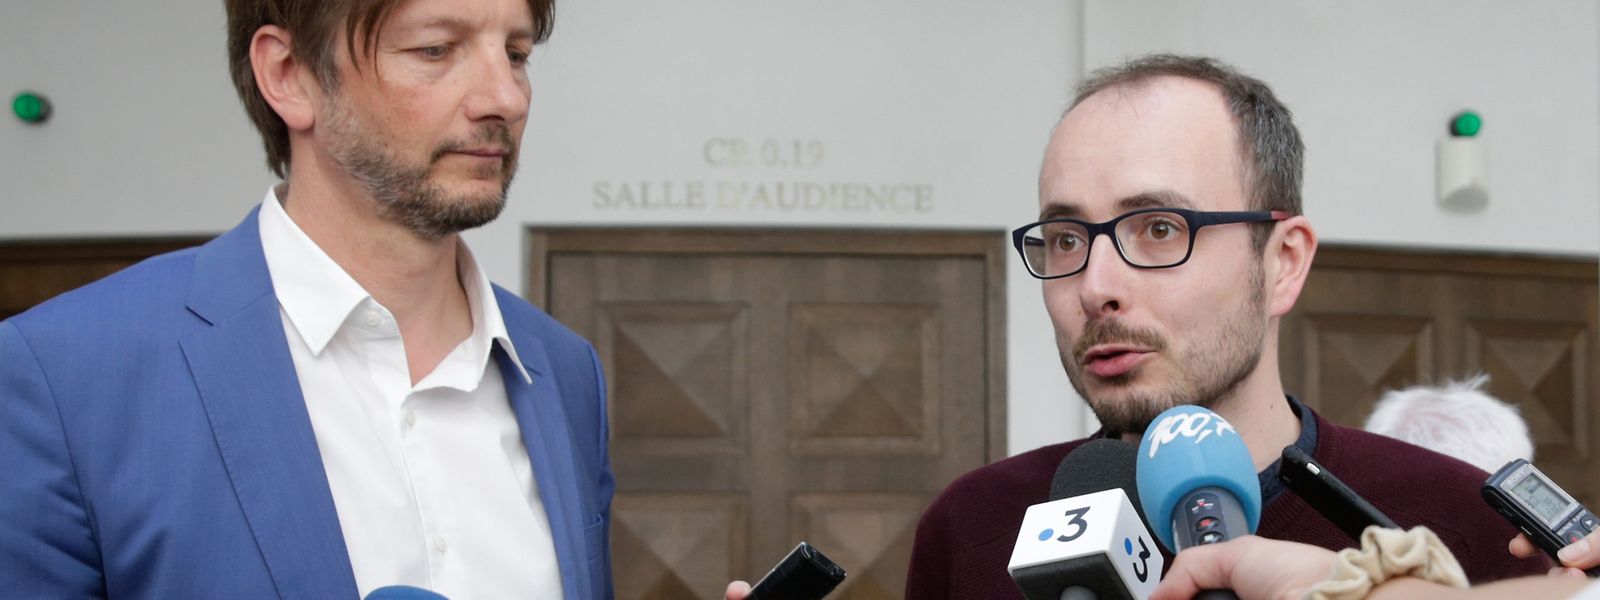 Antoine Deltour (rechts) ist der wohl bekannteste Fall eines Whistleblowers in Luxemburg. 